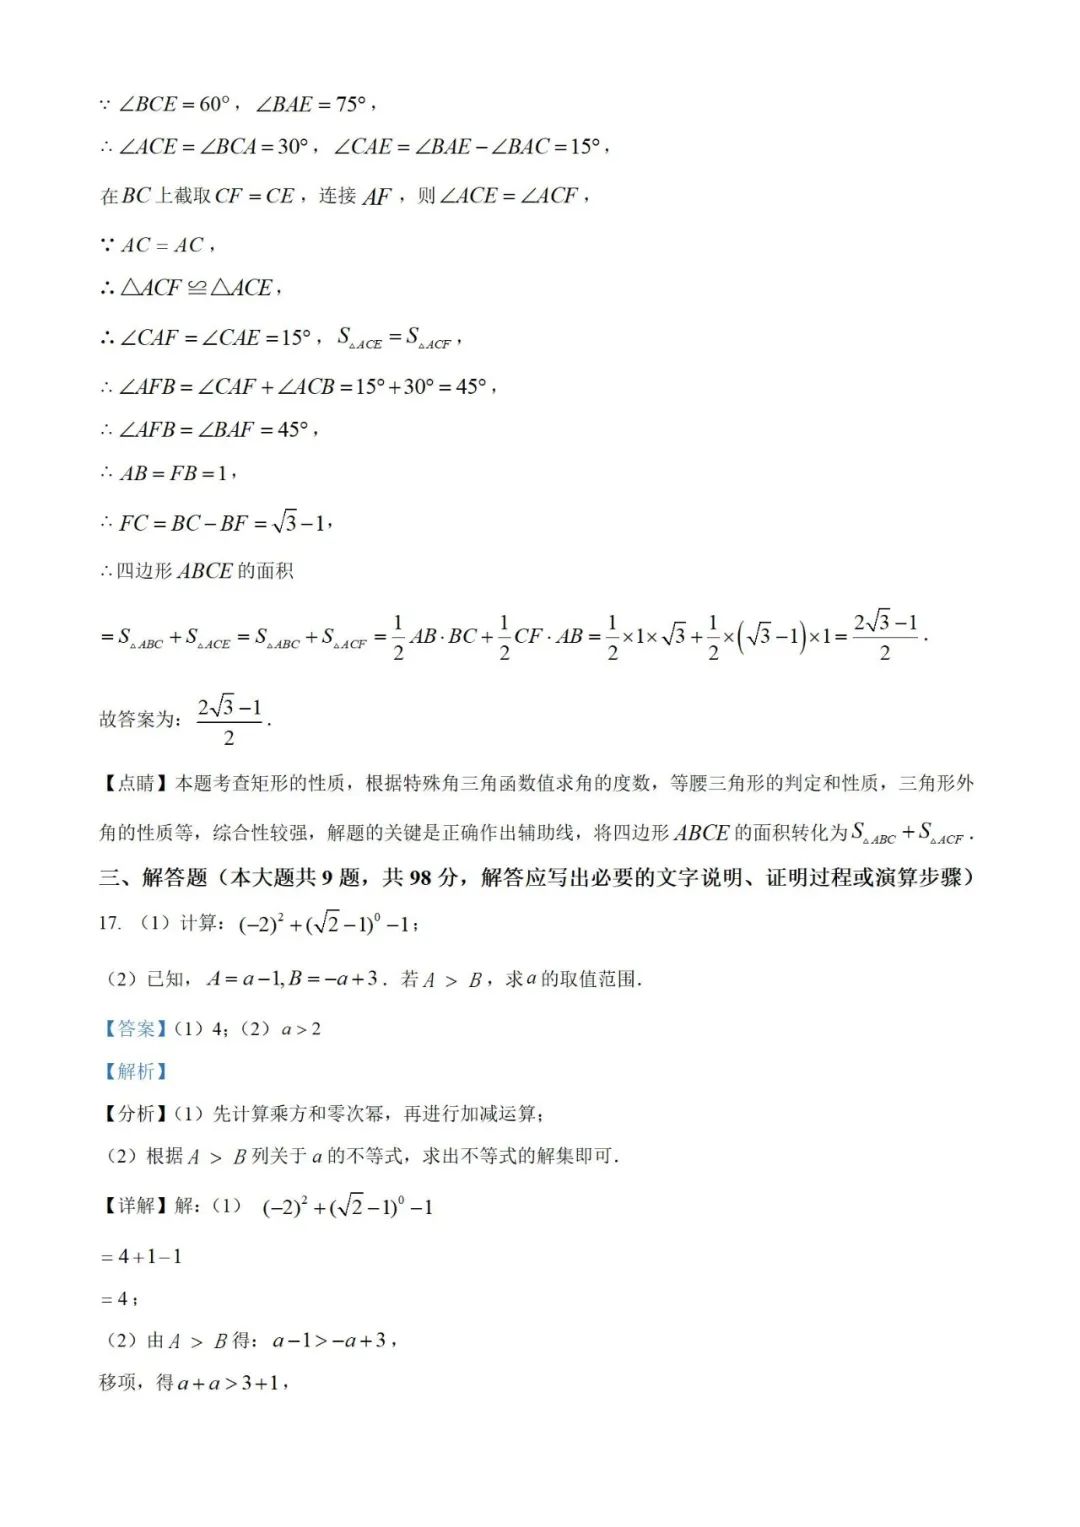 【中考真题】2023年贵州省中考数学真题 (带答案解析) 第18张